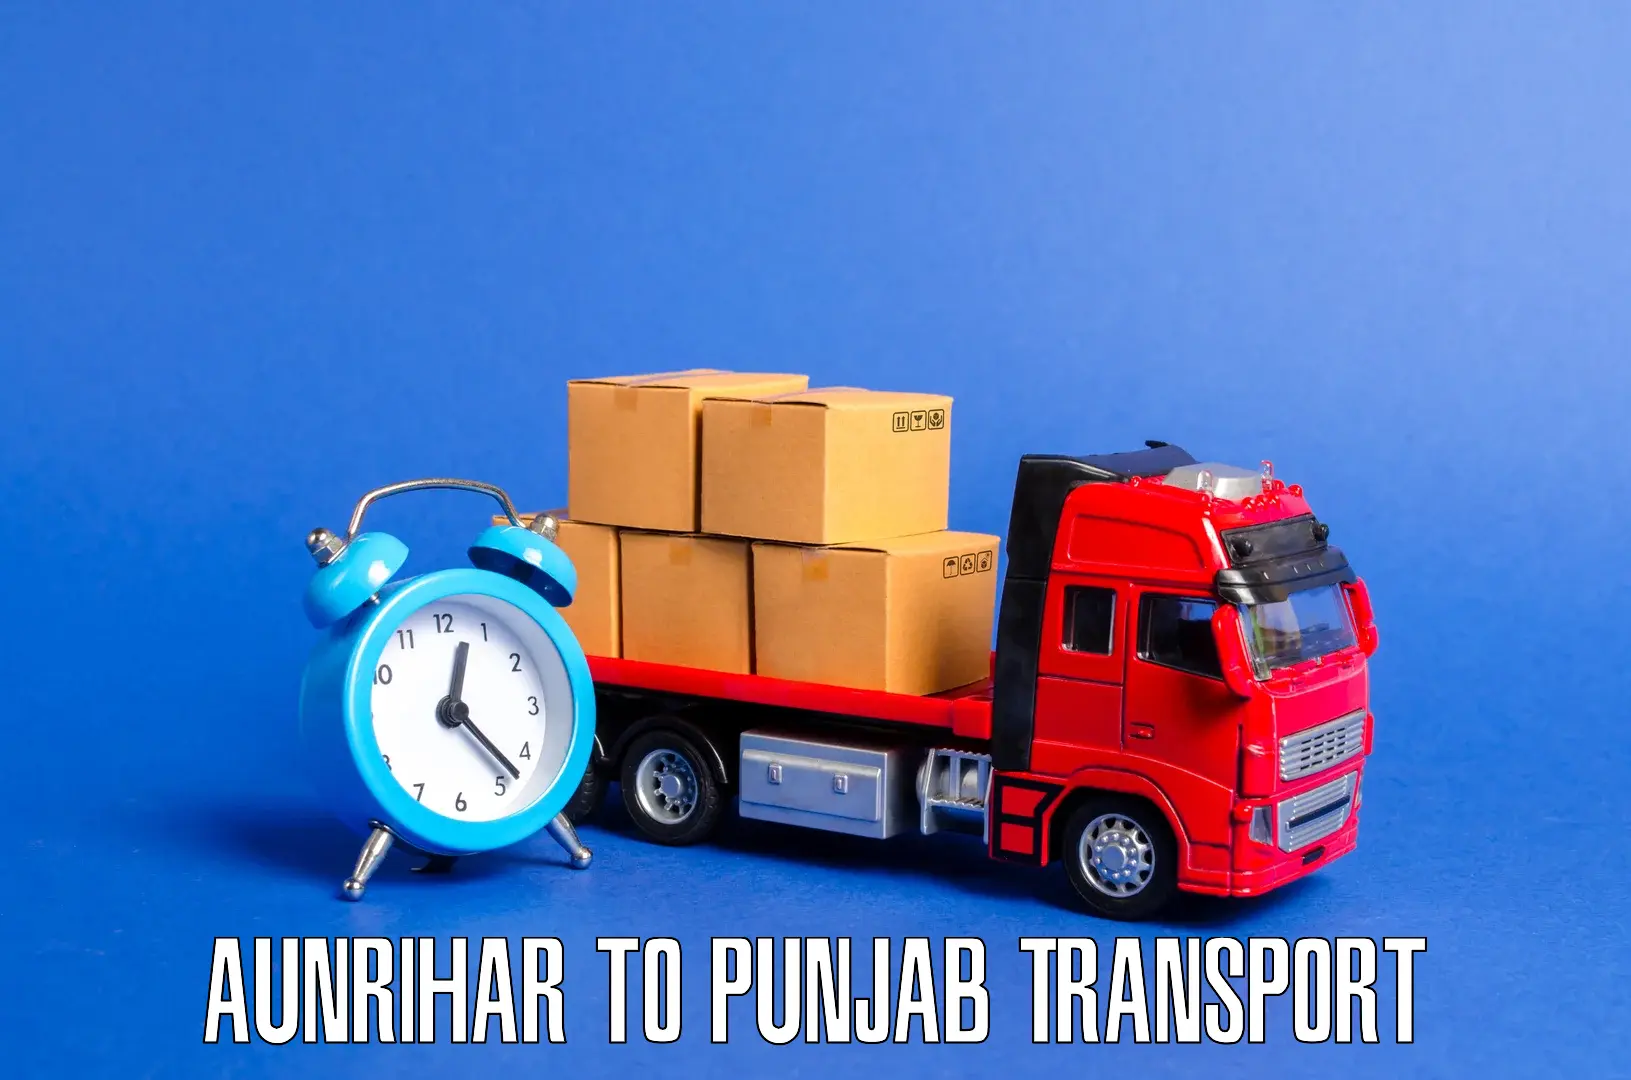 Cargo transport services Aunrihar to Bhadaur